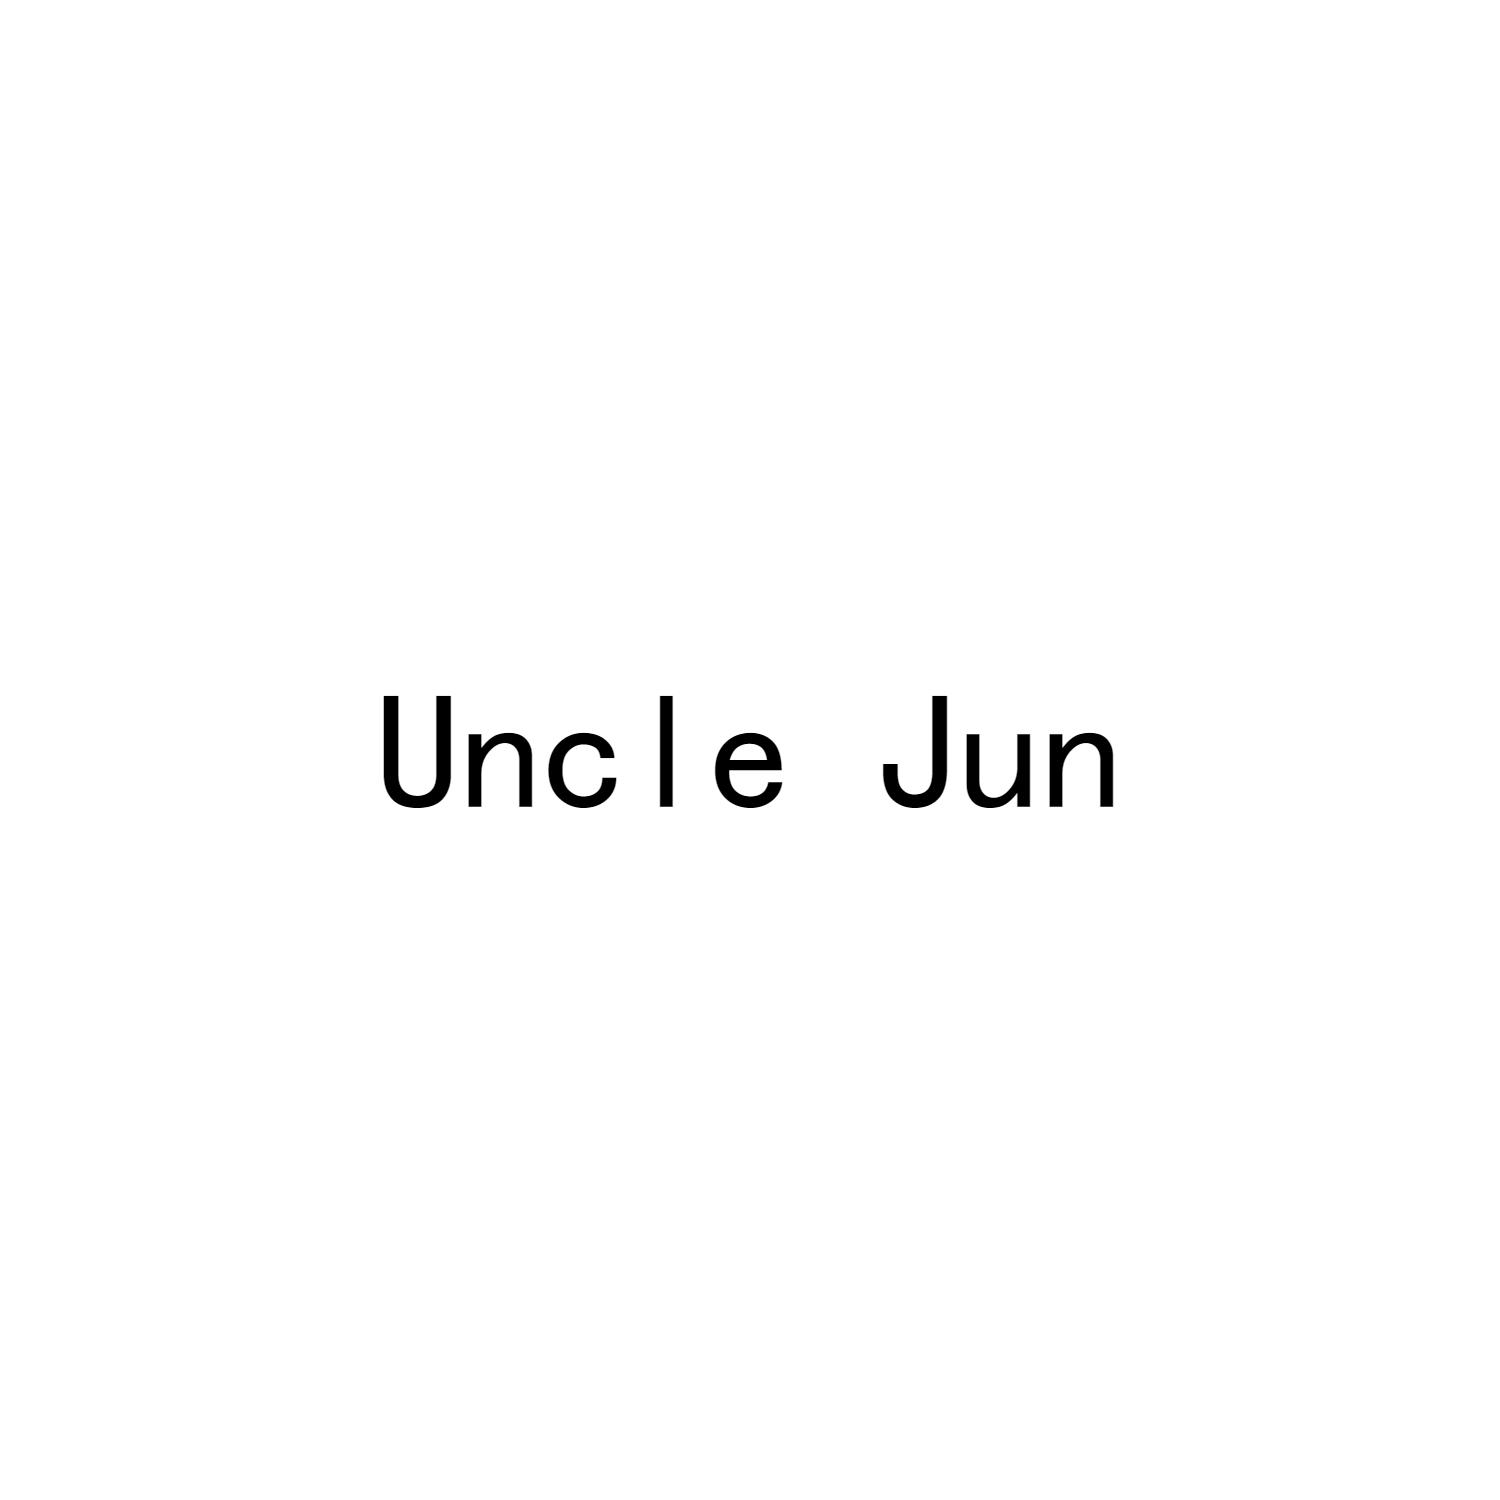 UNCLE JUN